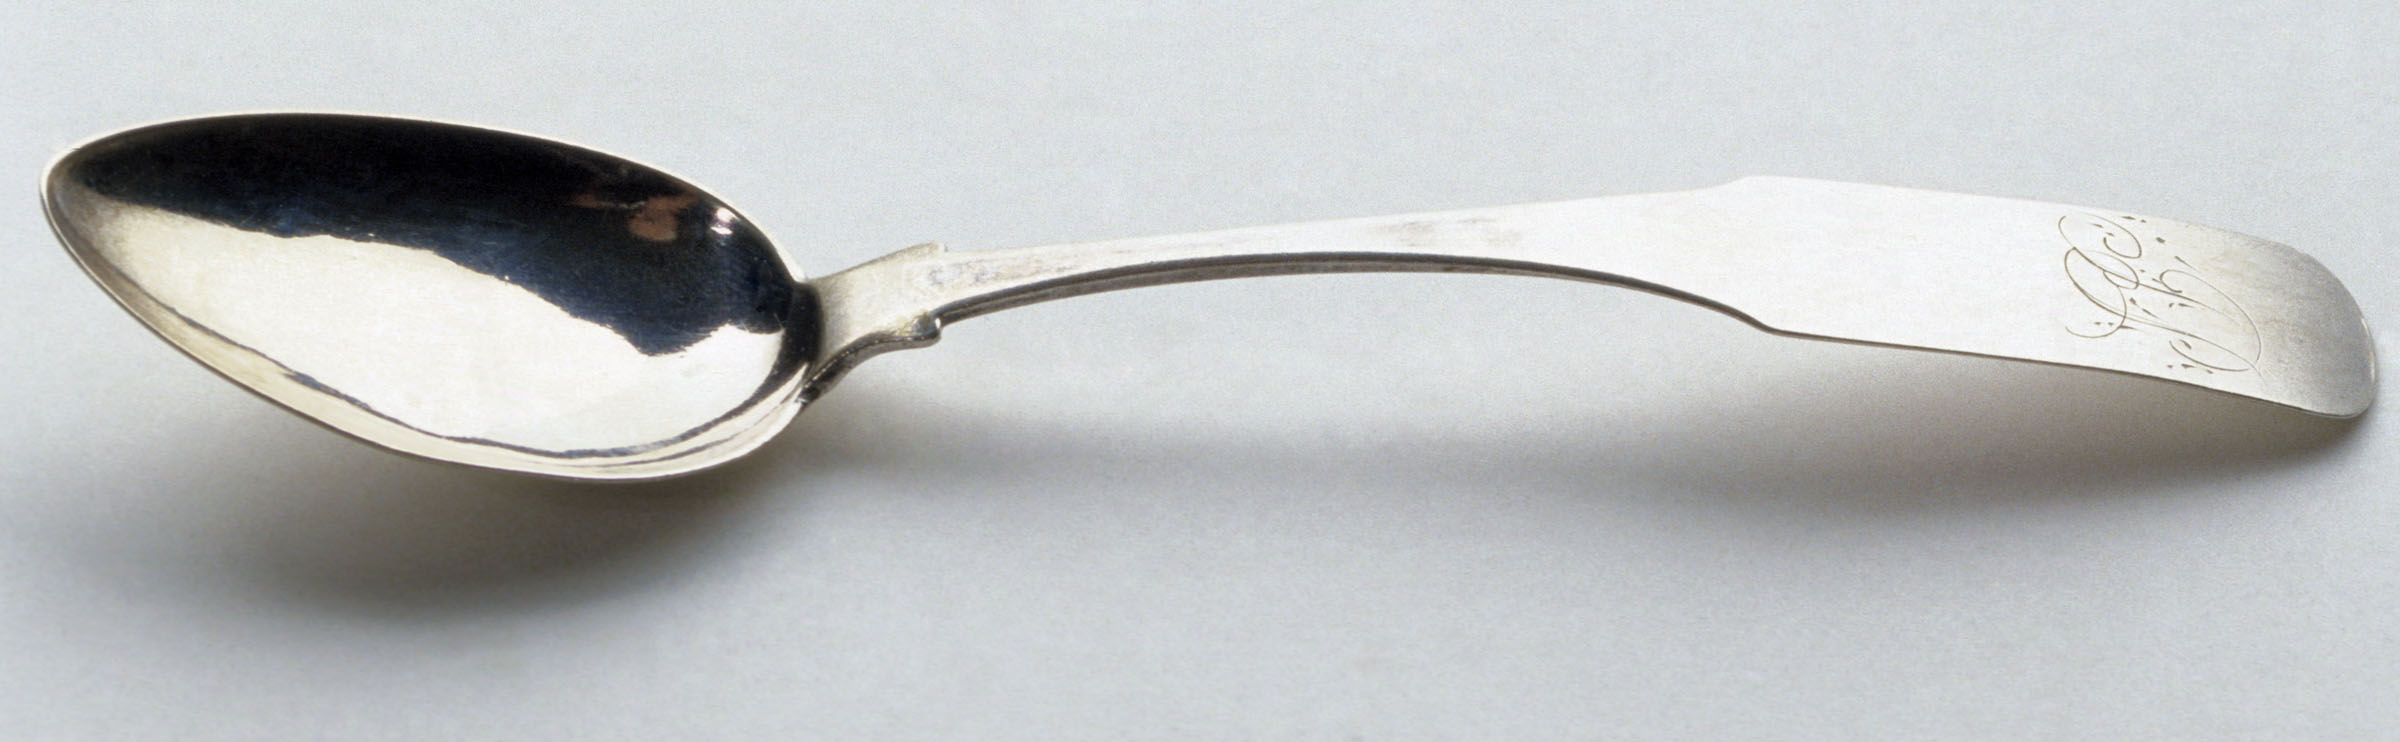 1961.0427.002 Spoon, Teaspoon